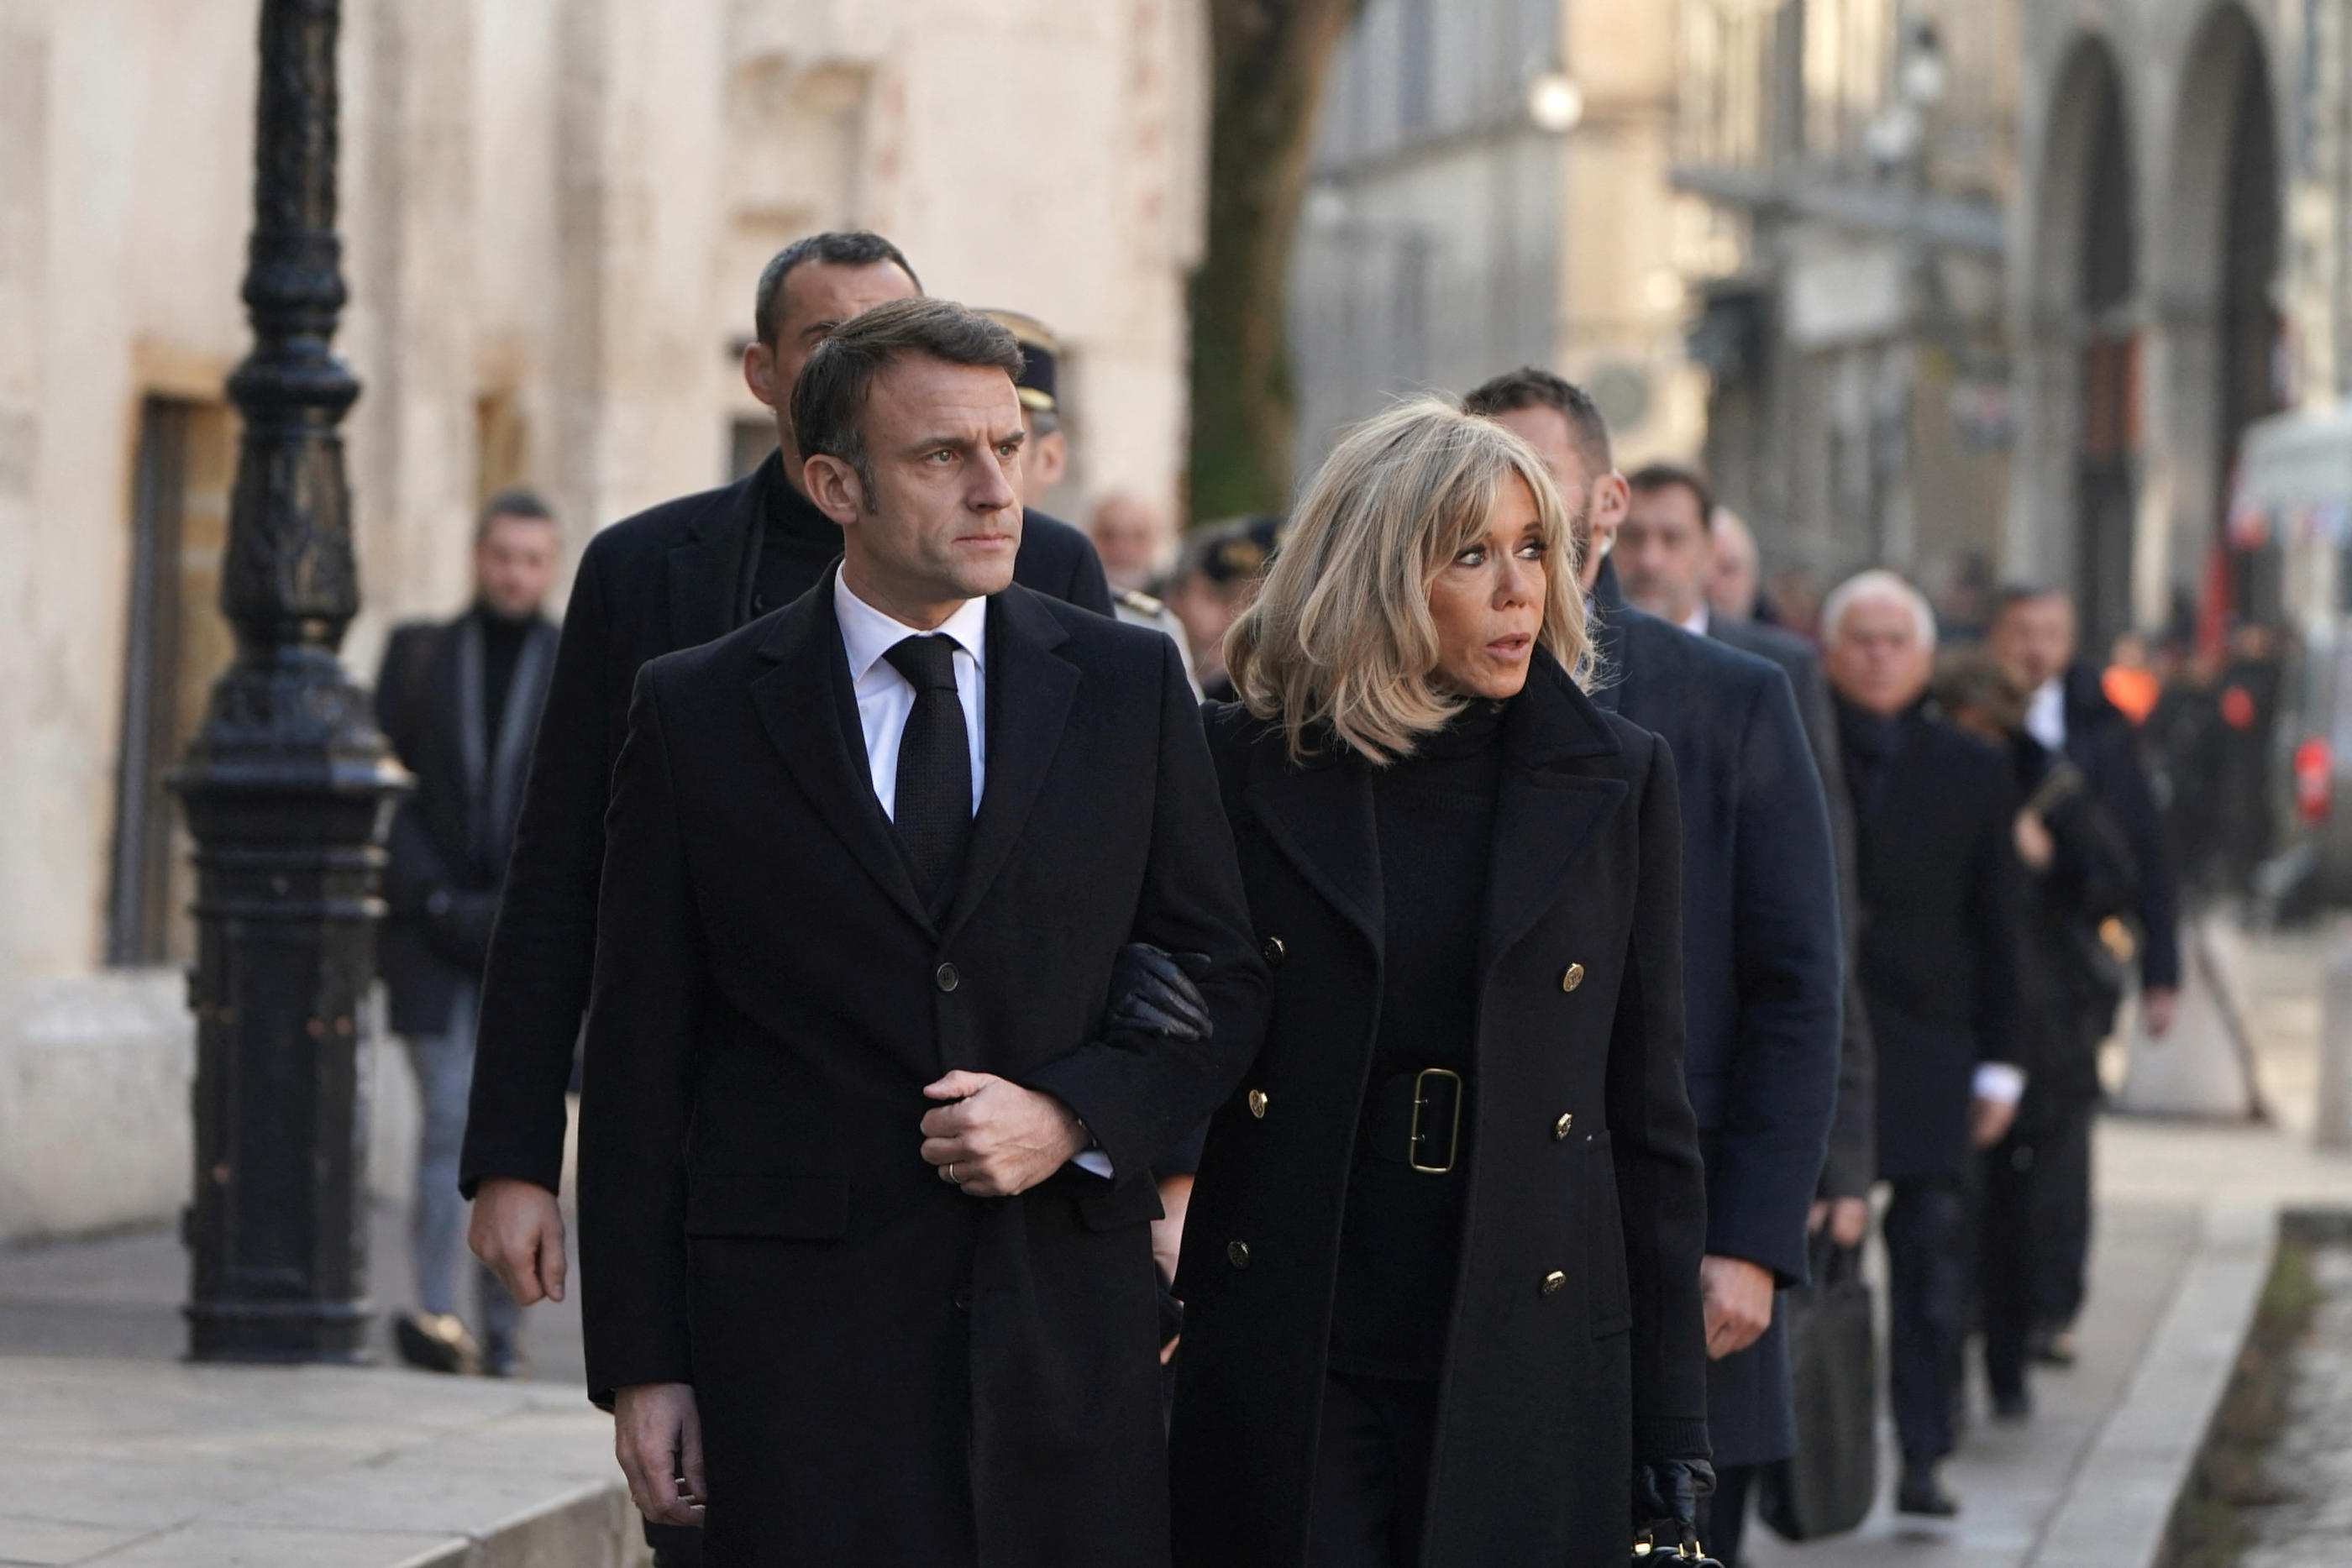 Emmanuel Macron et son épouse Brigitte Macron ont assisté aux funérailles de Gérard Collomb à Lyon ce mercredi. Reuters/Laurent Cipriani